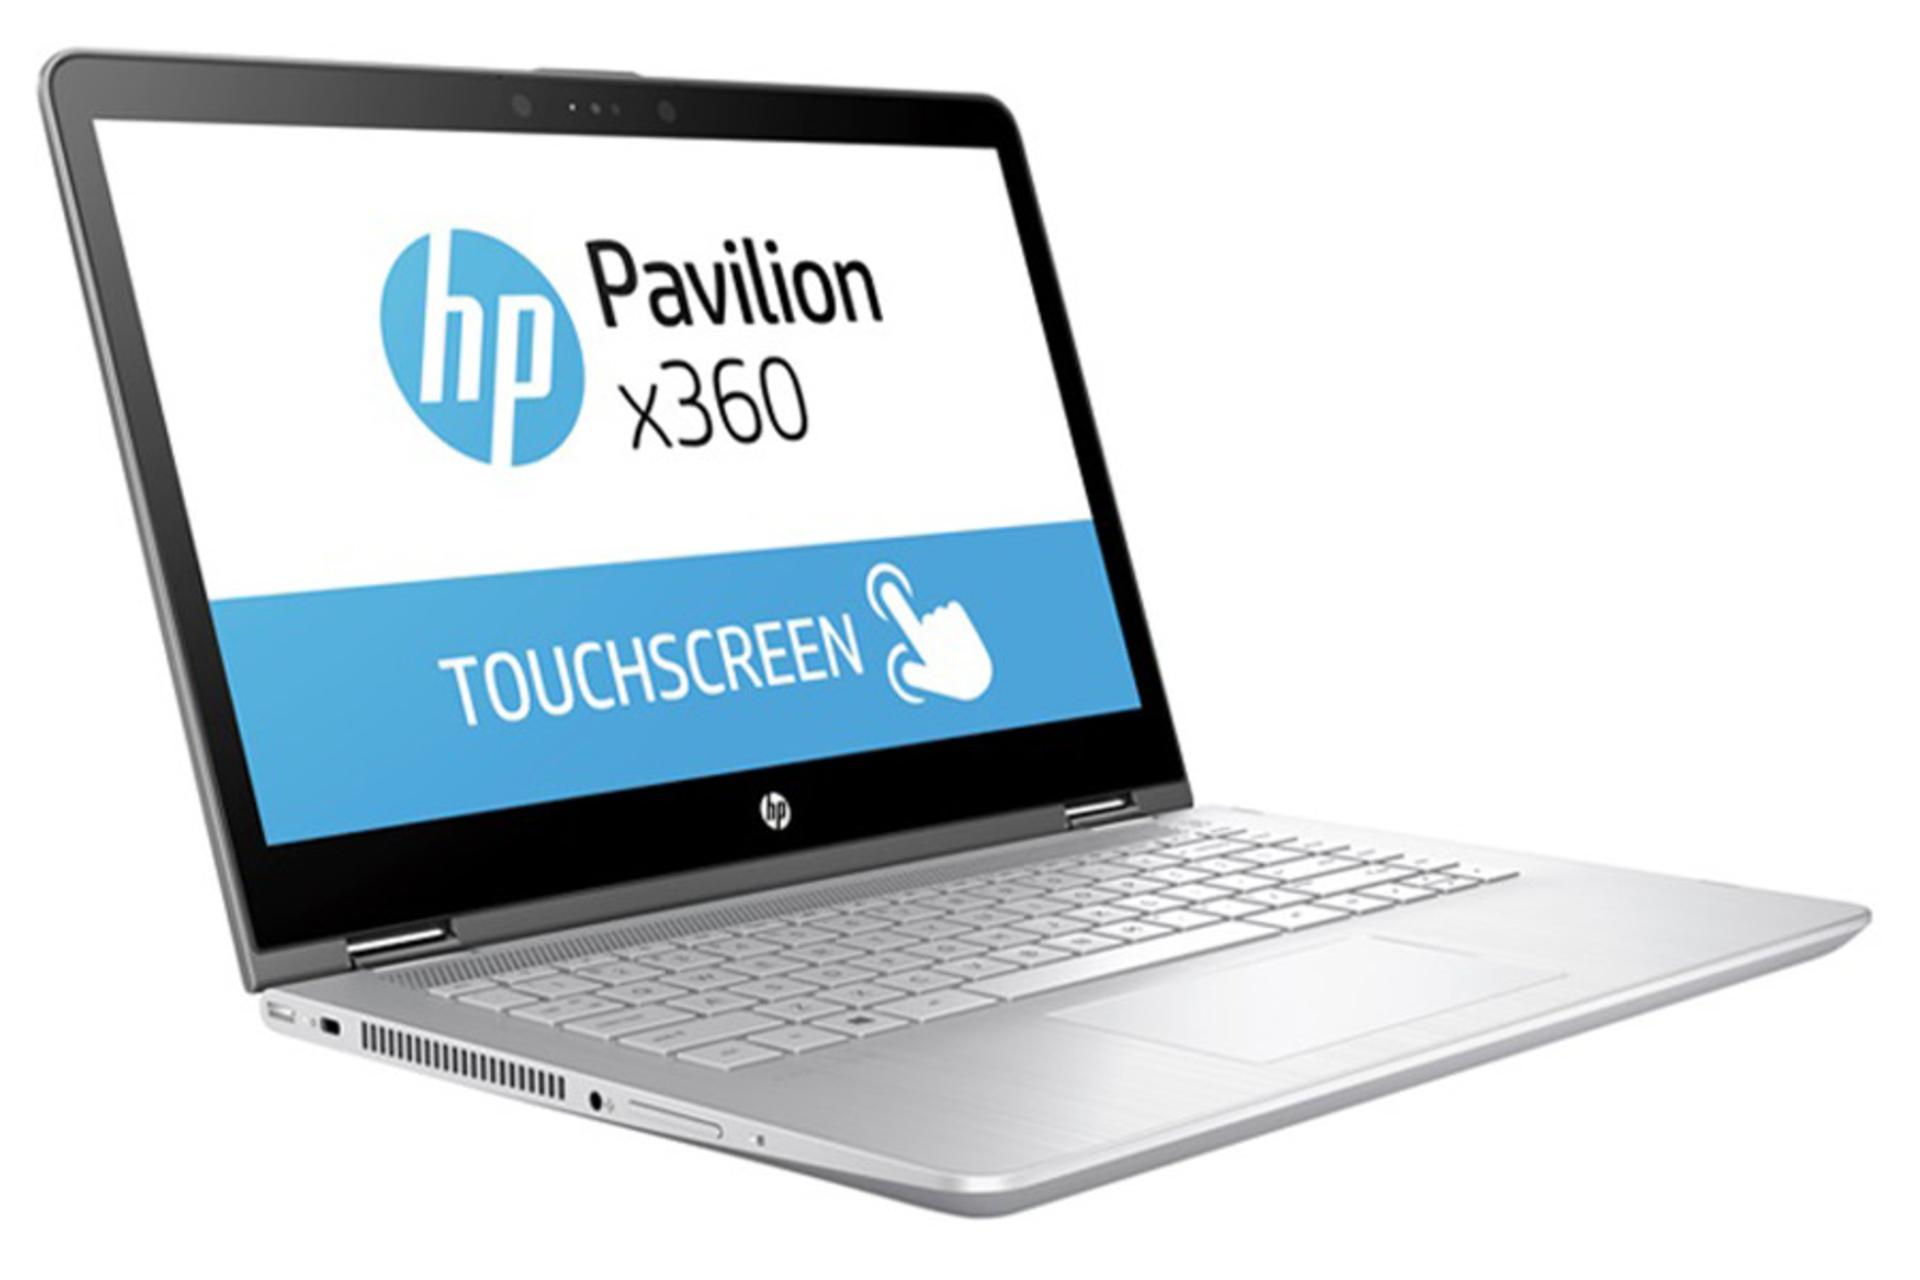 پاویلیون X360 14t-dh100 اچ پی- صفحه نمایش و صفحه کلید و پورت ها / HP Pavilion X360 14t-dh100